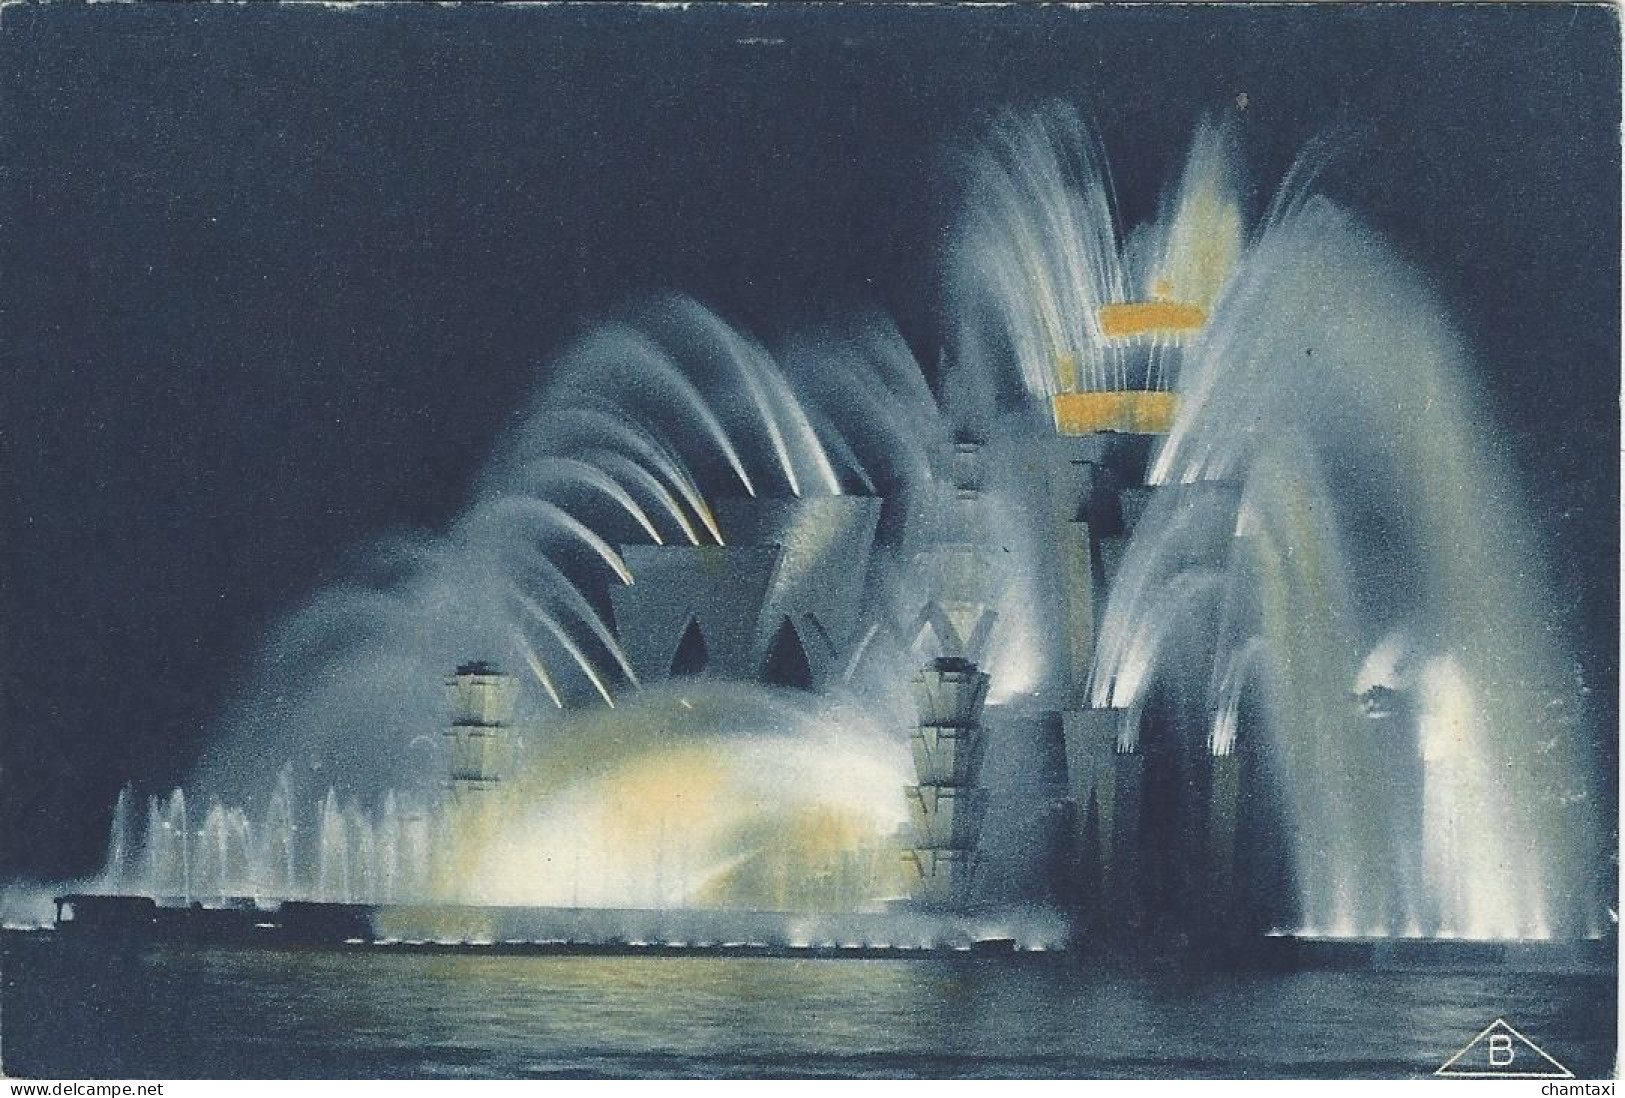 75 PARIS EXPOSITION  COLONIALE INTERNATIONALE 1931 THEATRE D'EAU VUE DE NUIT ARCHITECTES GRANET ET EXPERT Edi BRAUN 356 - Mostre